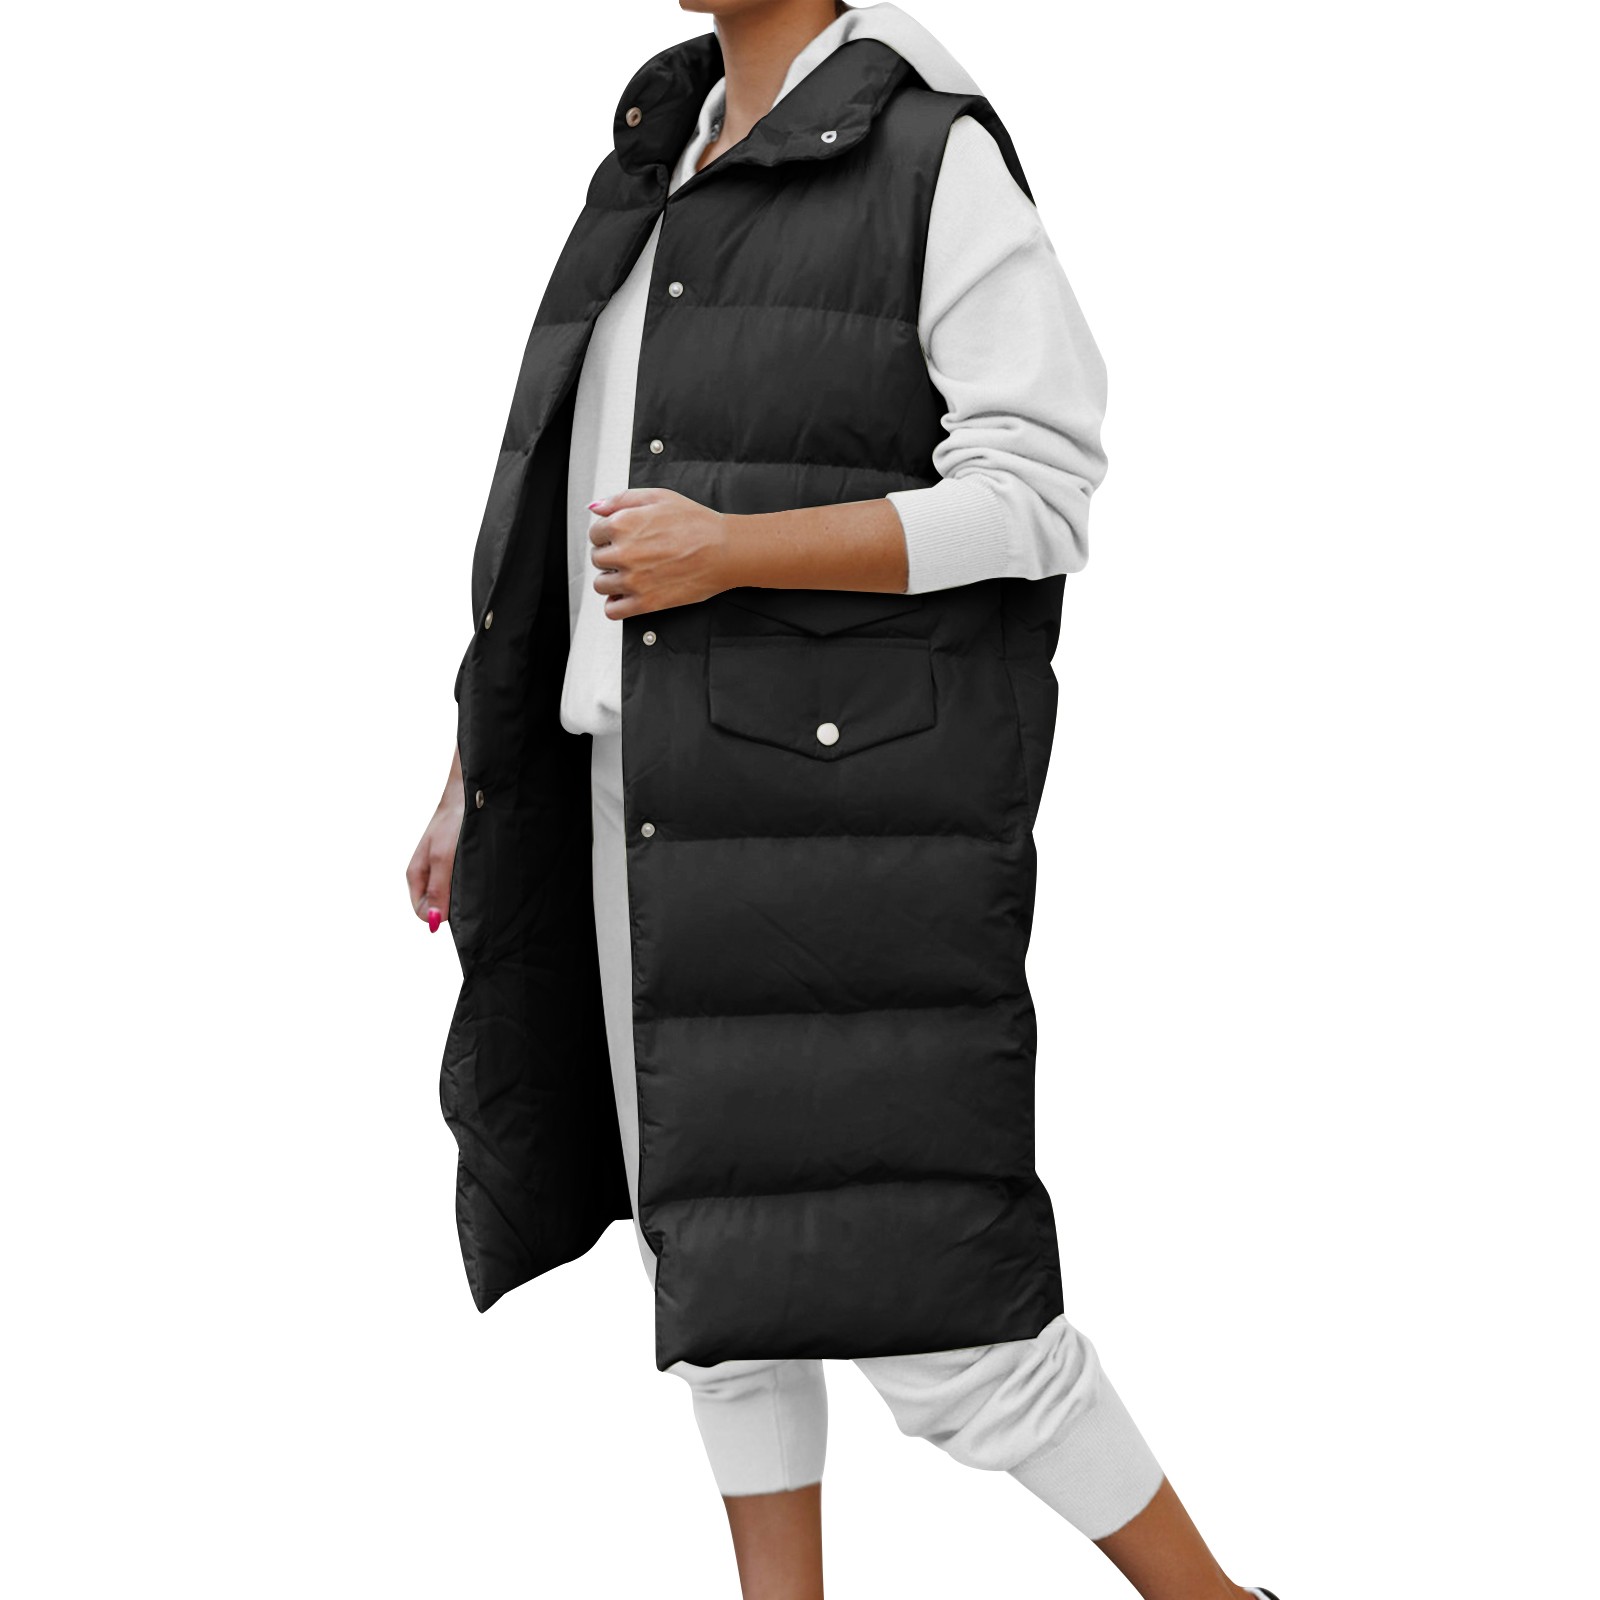 HSMQHJWE Swim Parka Women Lightweight Jackets For Women Womens Long Winter Coat Vest Vest Thermal Padded Jacket With Pocket Vest Vest Padded Quilted Outdoor Jacket Long Coat Women Hunting - image 1 of 5